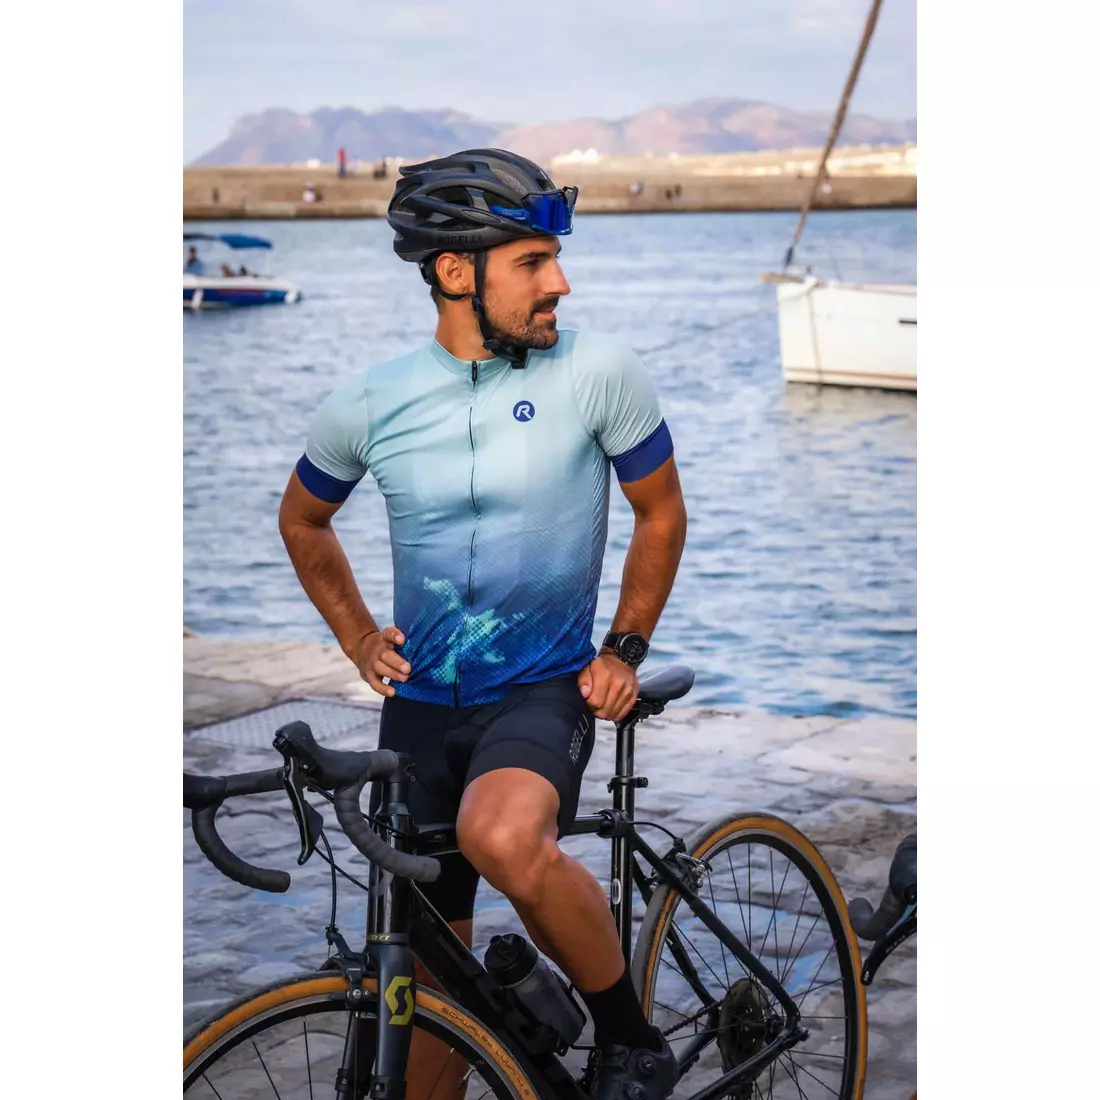 Rogelli NEBULA pánský cyklistický dres, modro-mátová